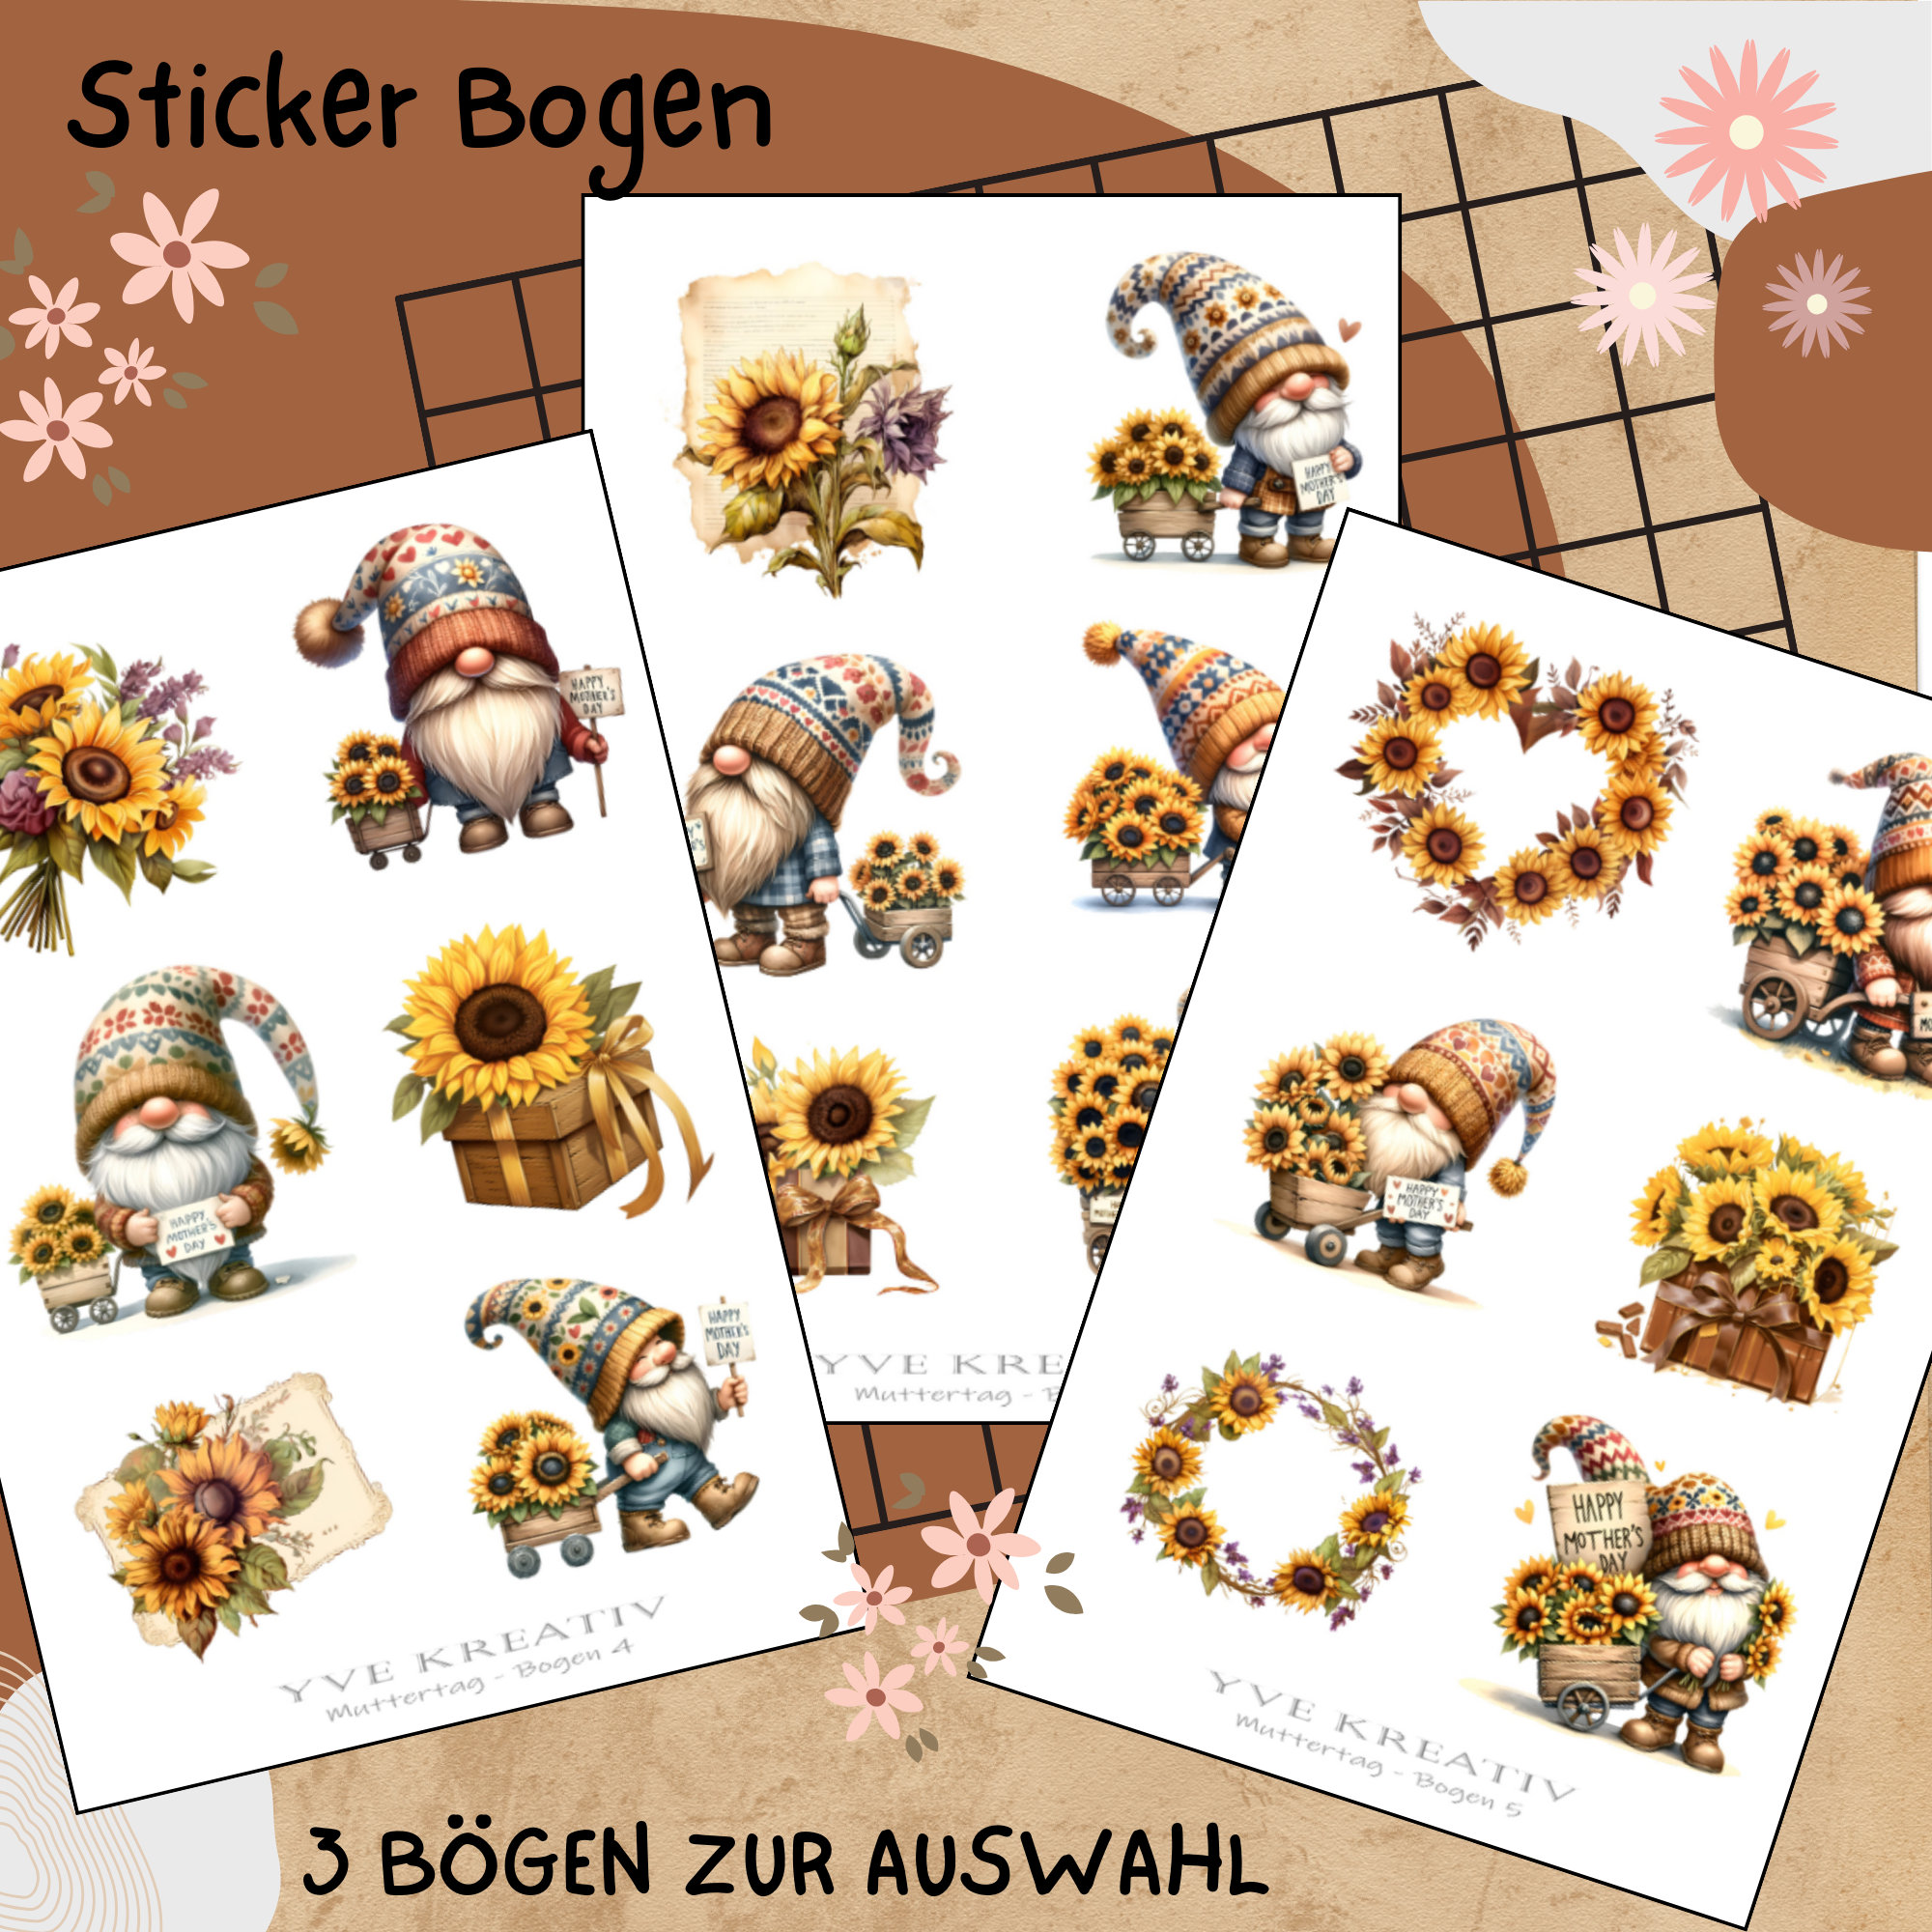 Sticker Bogen "Muttertag Sonnenblumen Wichtel" | Sticker Set - Aufkleber 3 Stickerbogen zur Auswahl in Weiß - Transparent - Matt - Glanz